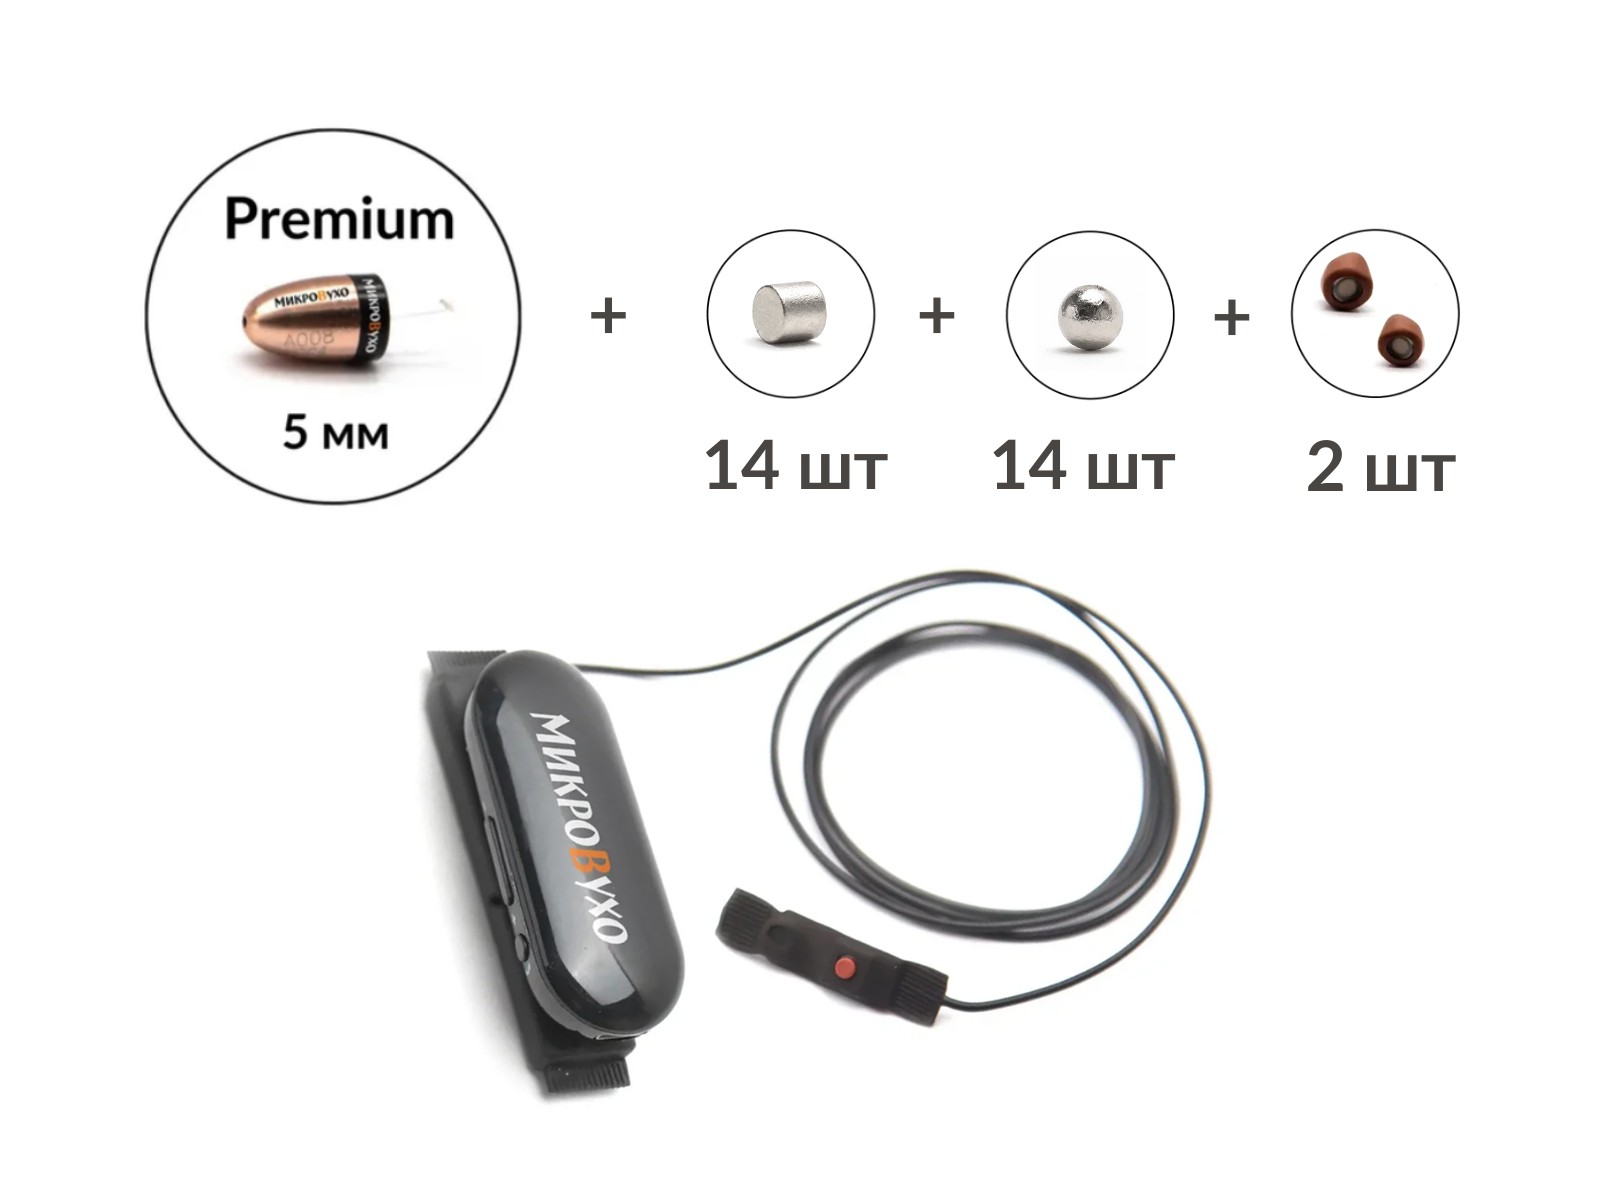 Универсальная гарнитура Bluetooth Box Pro Plus c капсулой Premium и магнитами 2 мм - изображение 5